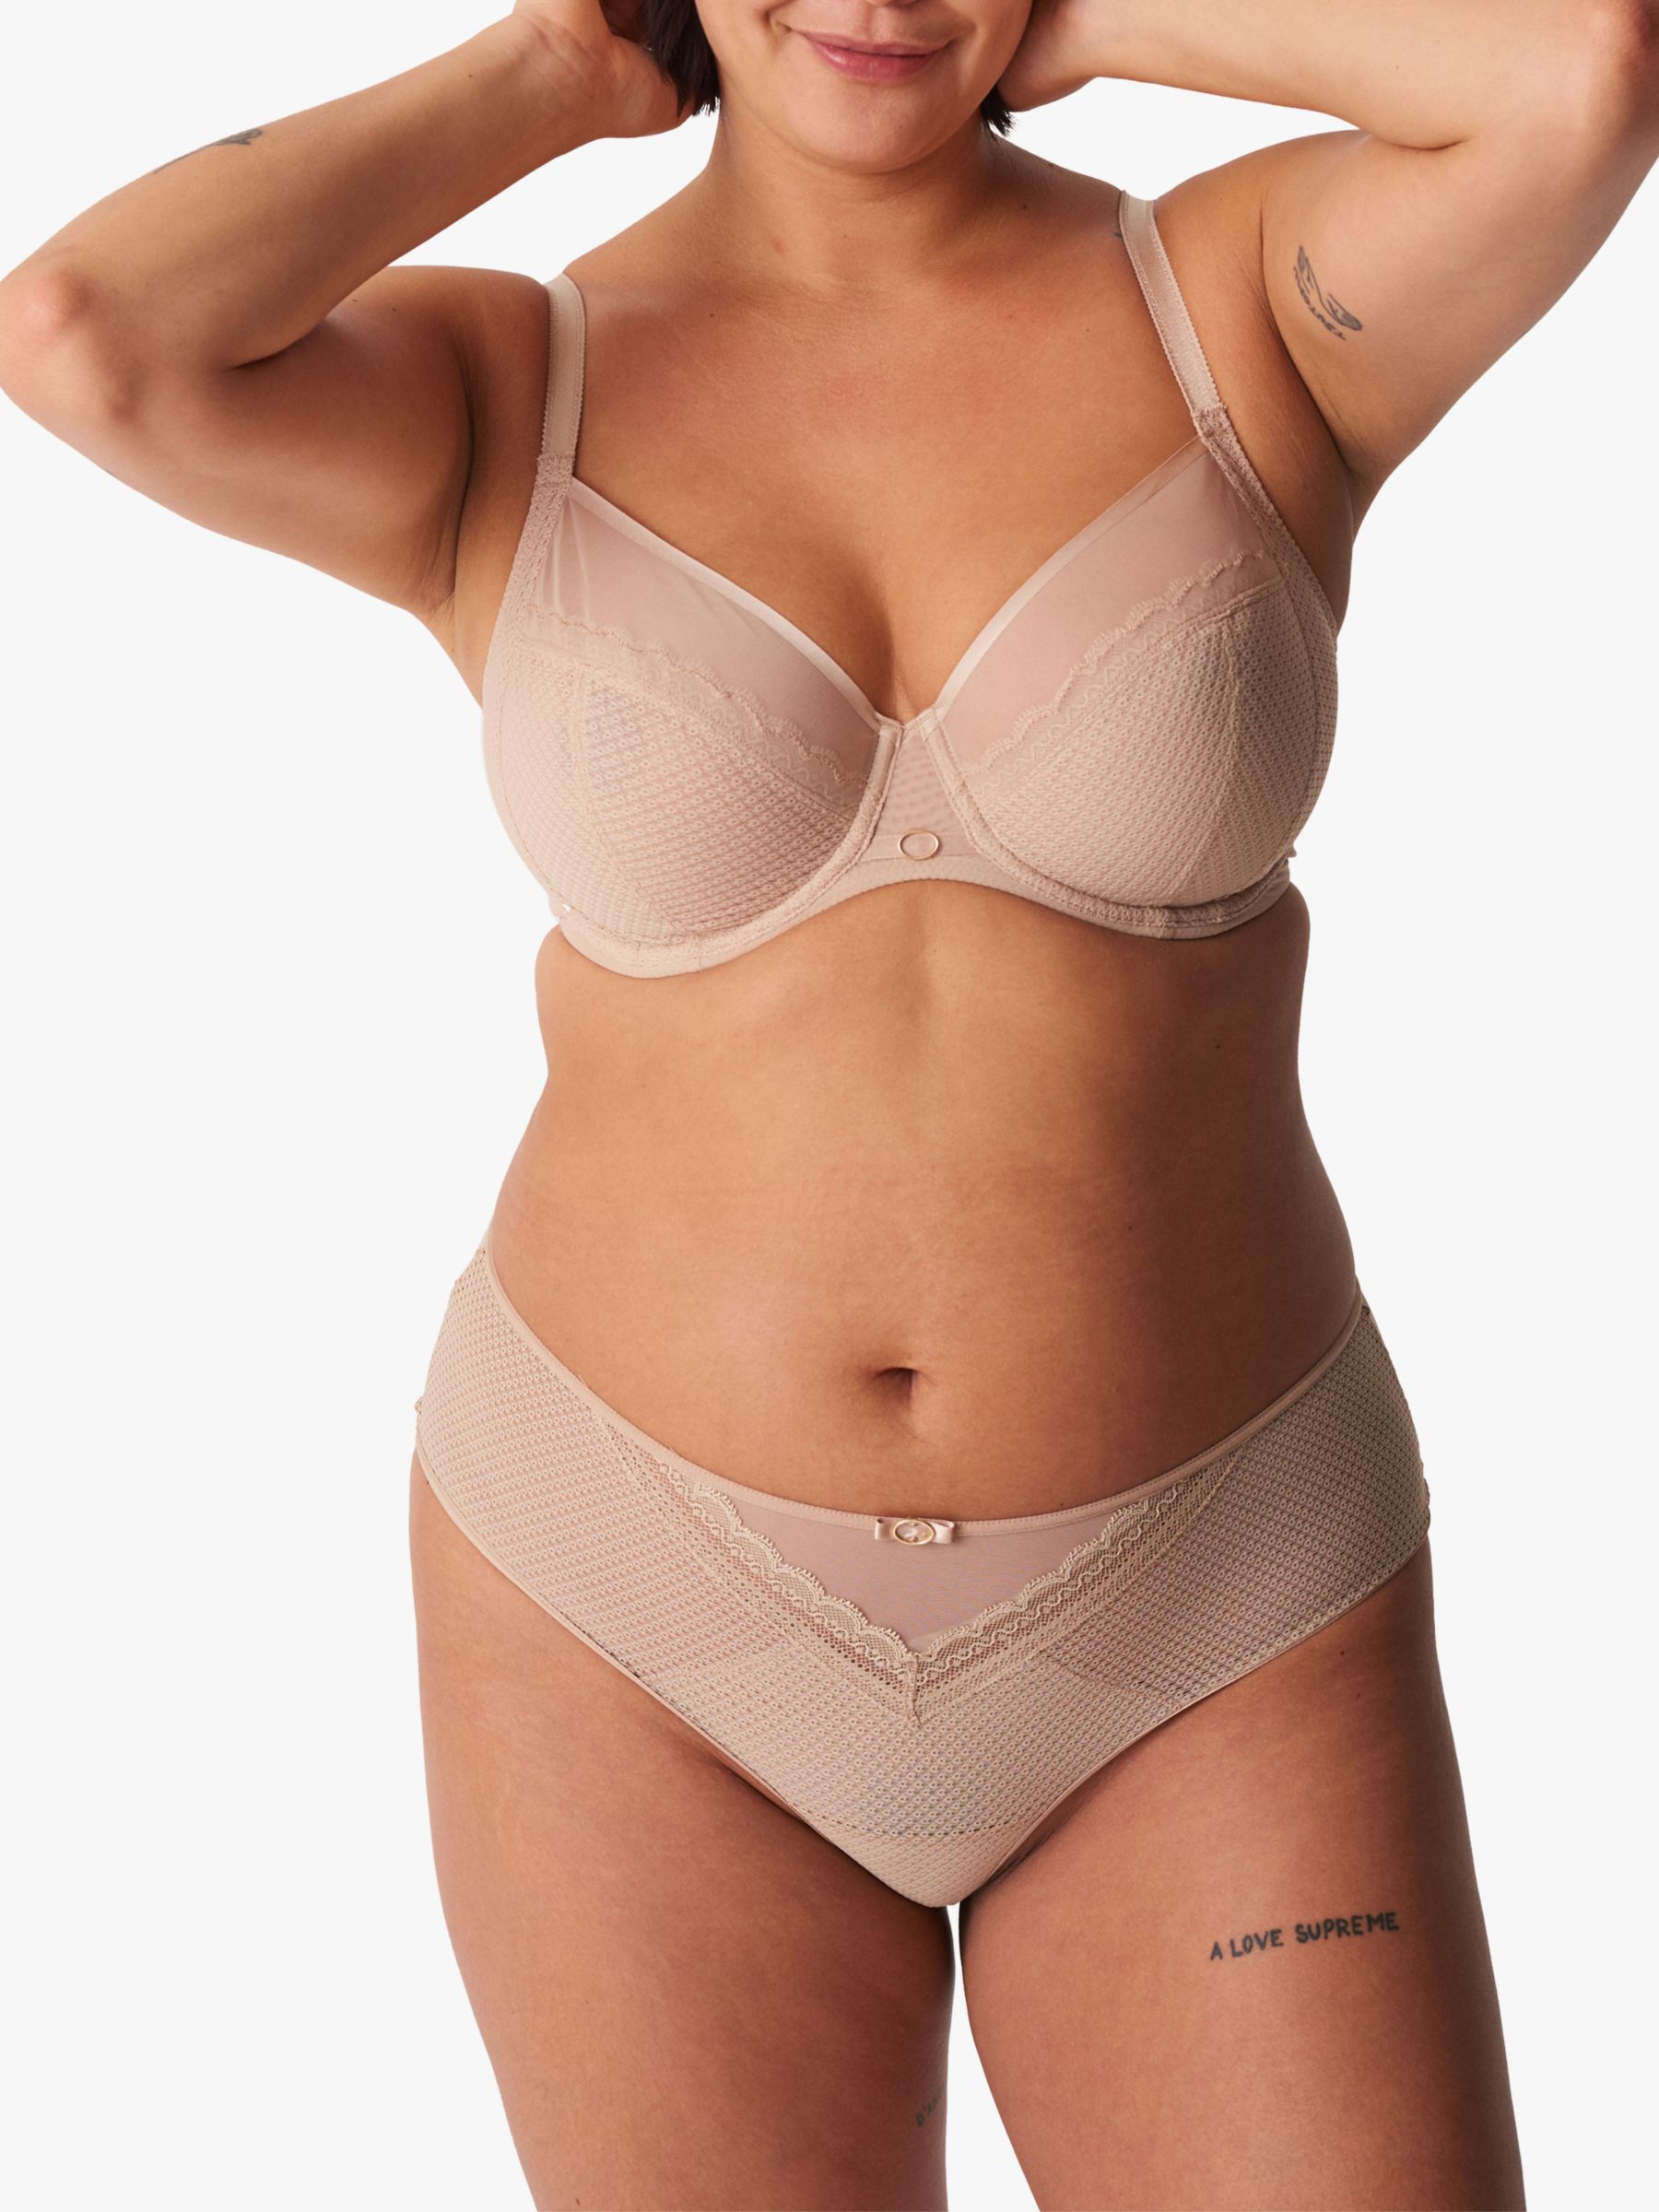 Buy Women's Bras Nude Chantelle Lingerie Online